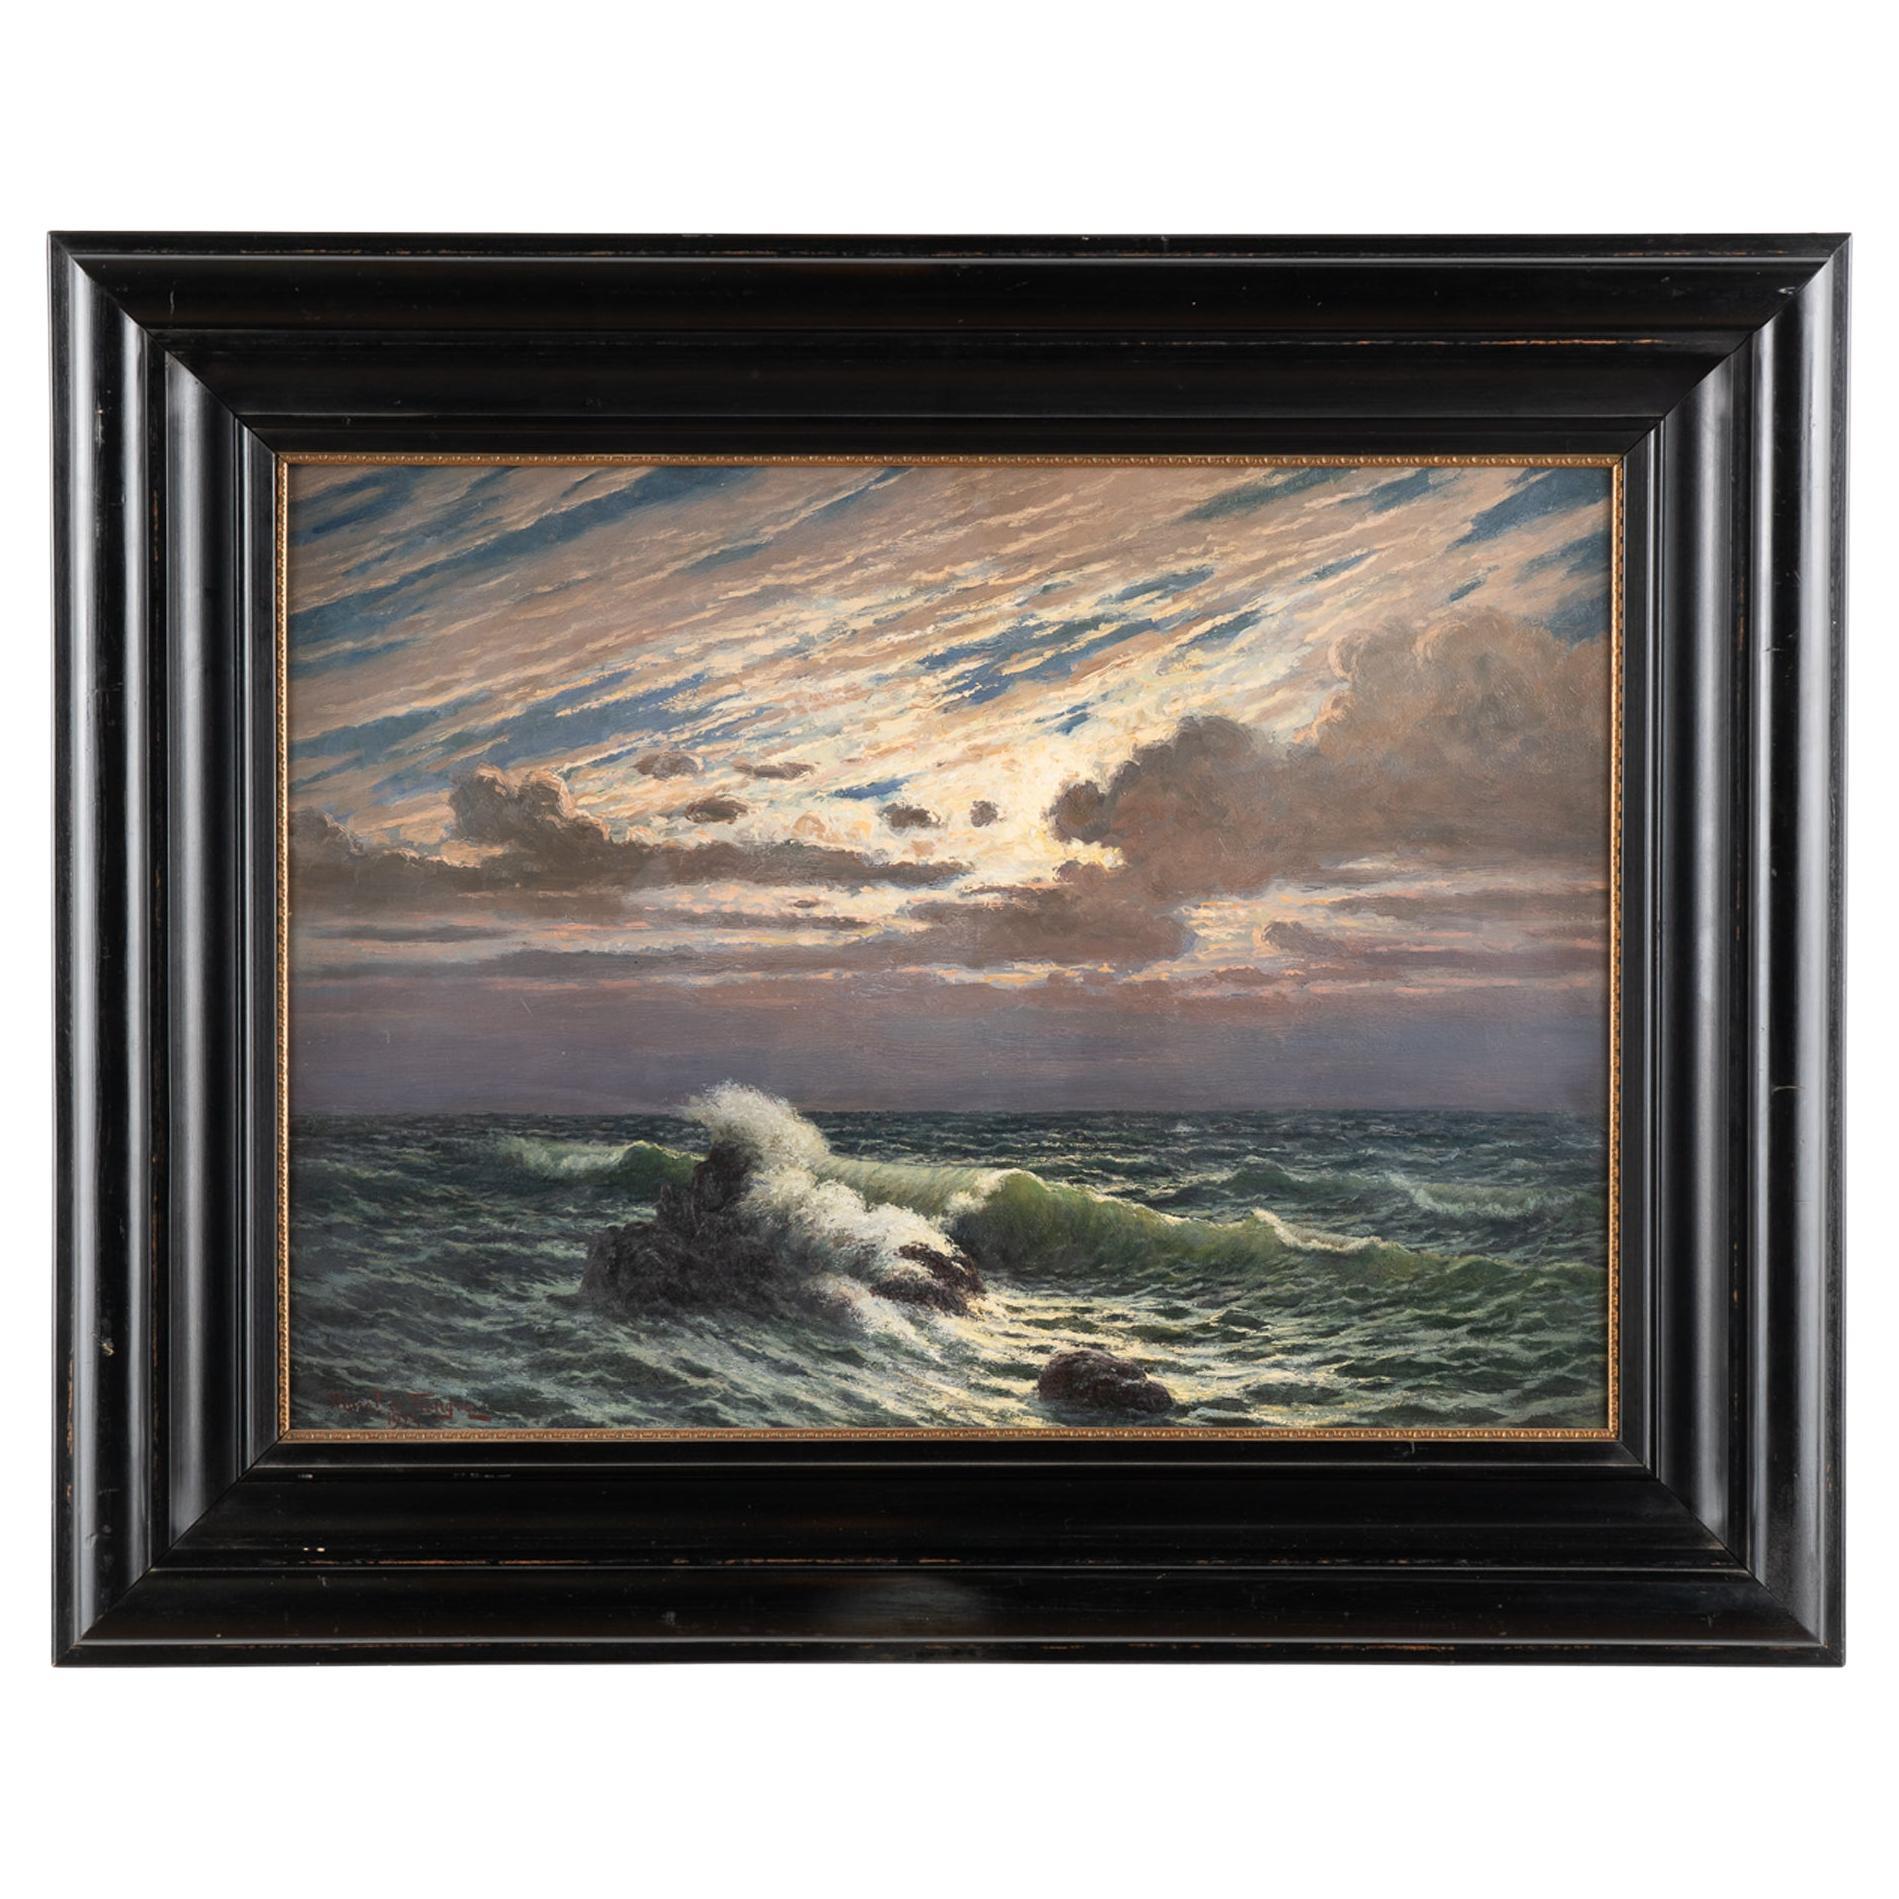 Peinture à l'huile sur toile représentant des vagues océaniques éclairées, signée Morel de Tanguy, 1923